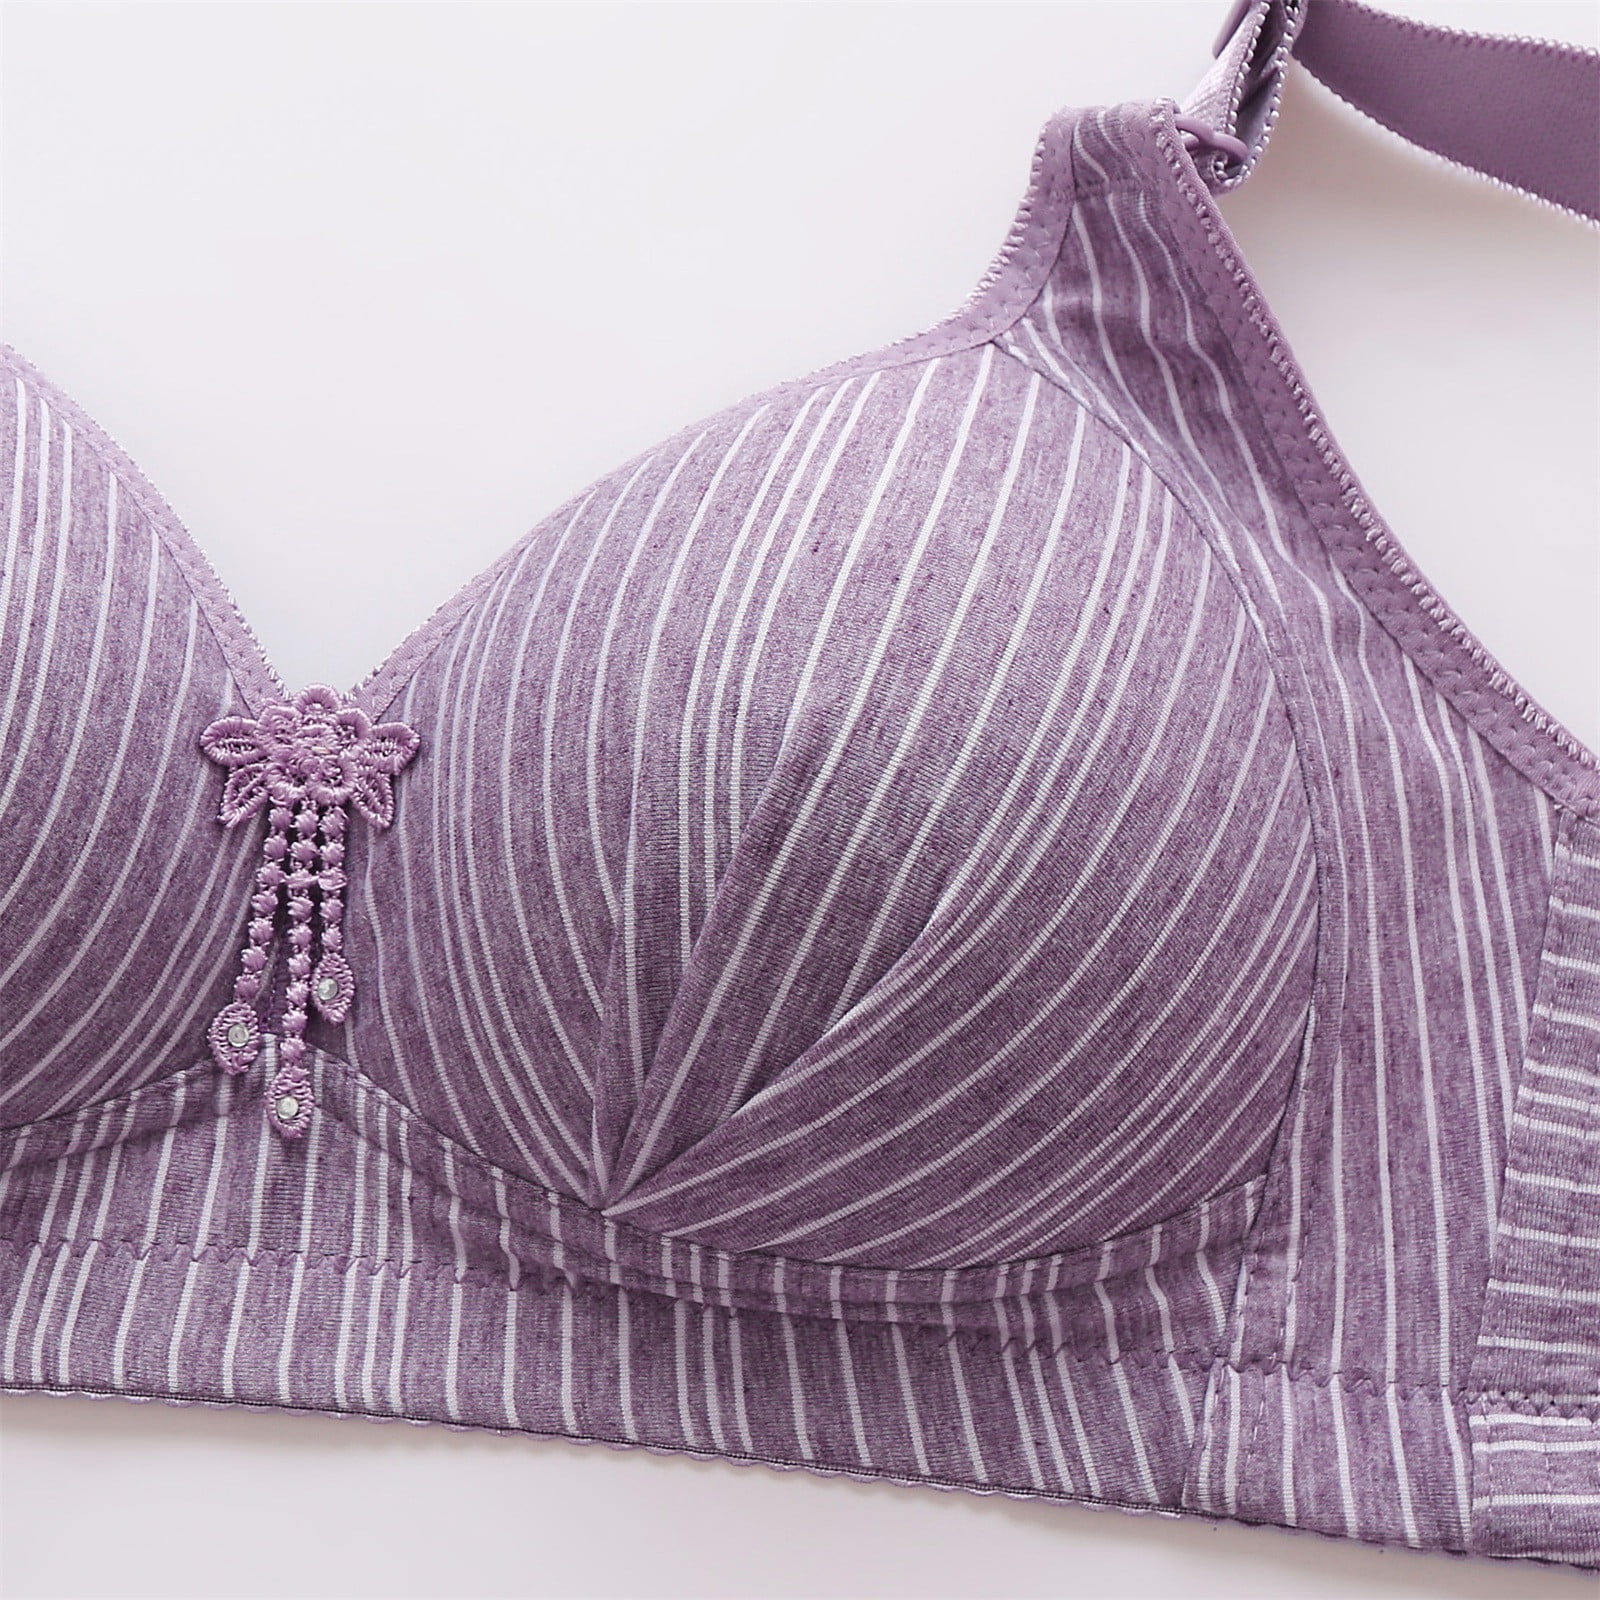 LEEy-world Lingerie for Women Women Full Cup Thin Underwear Bra Plus Size  Wireless Adjustable Lace Bra Large Lize Lace Bras,Pink 